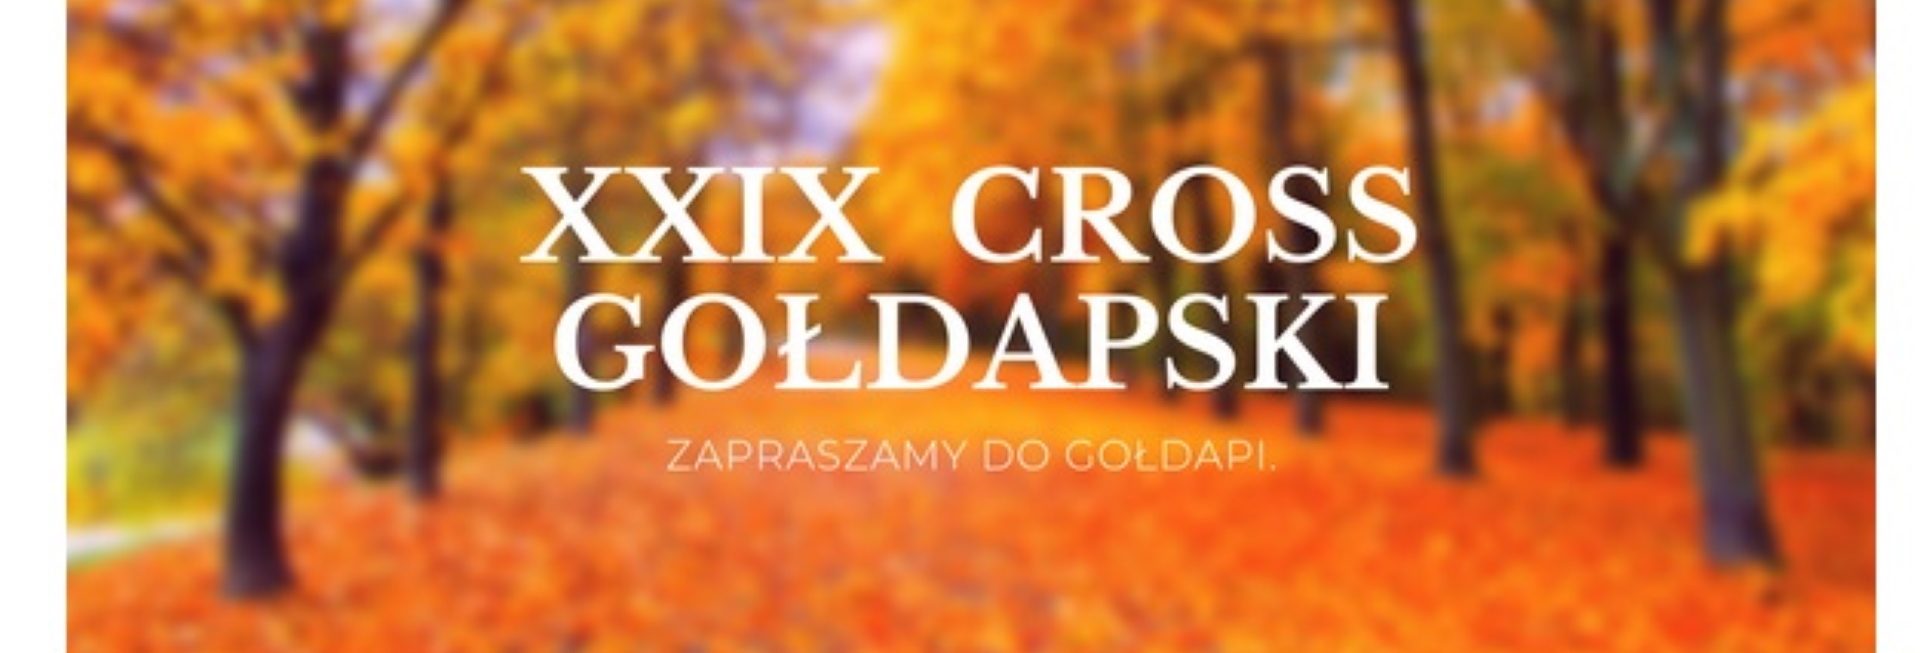 Zdjęcie zapraszające do Gołdapi na 29. edycję Cross Gołdapski Gołdap - 2021. Tłem zdjęcia jest las podczas jesieni. 